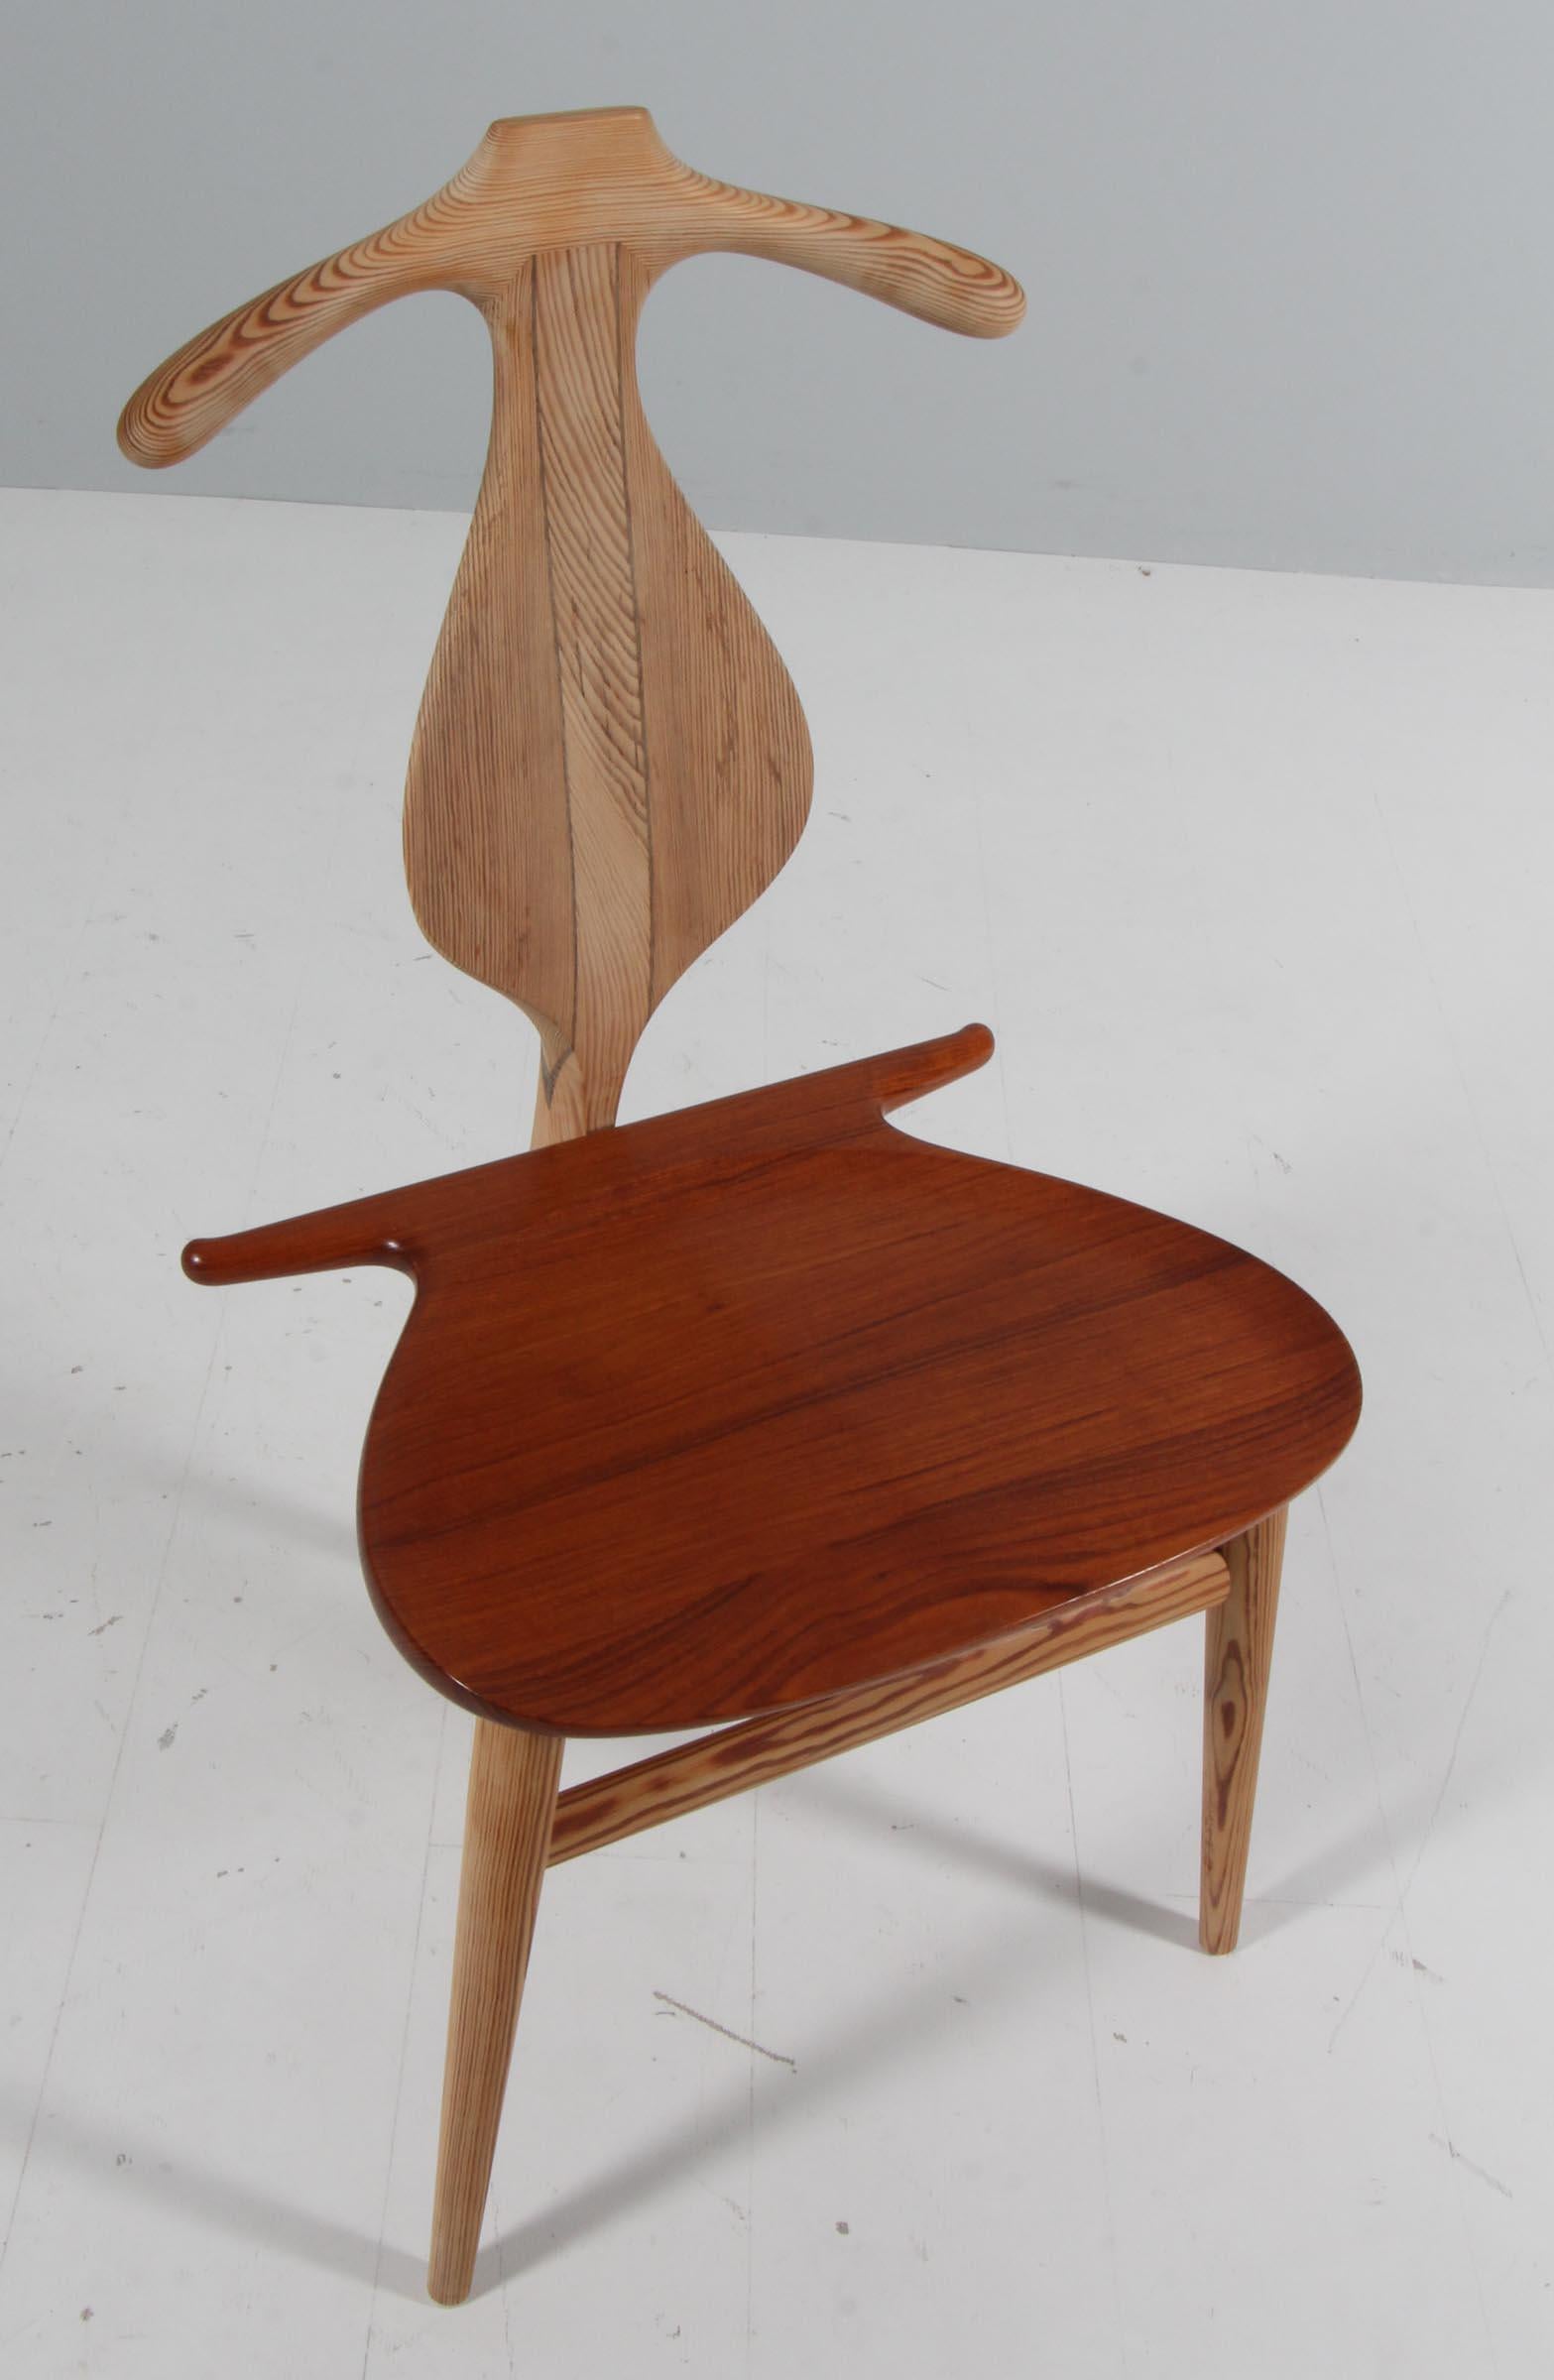 L'emblématique chaise de valet de Wegner repousse les limites de ses capacités en matière de design, d'échelle, de proportion et d'artisanat. L'expertise en matière de sculpture et de menuiserie souligne la nature idiosyncrasique du design, conçu